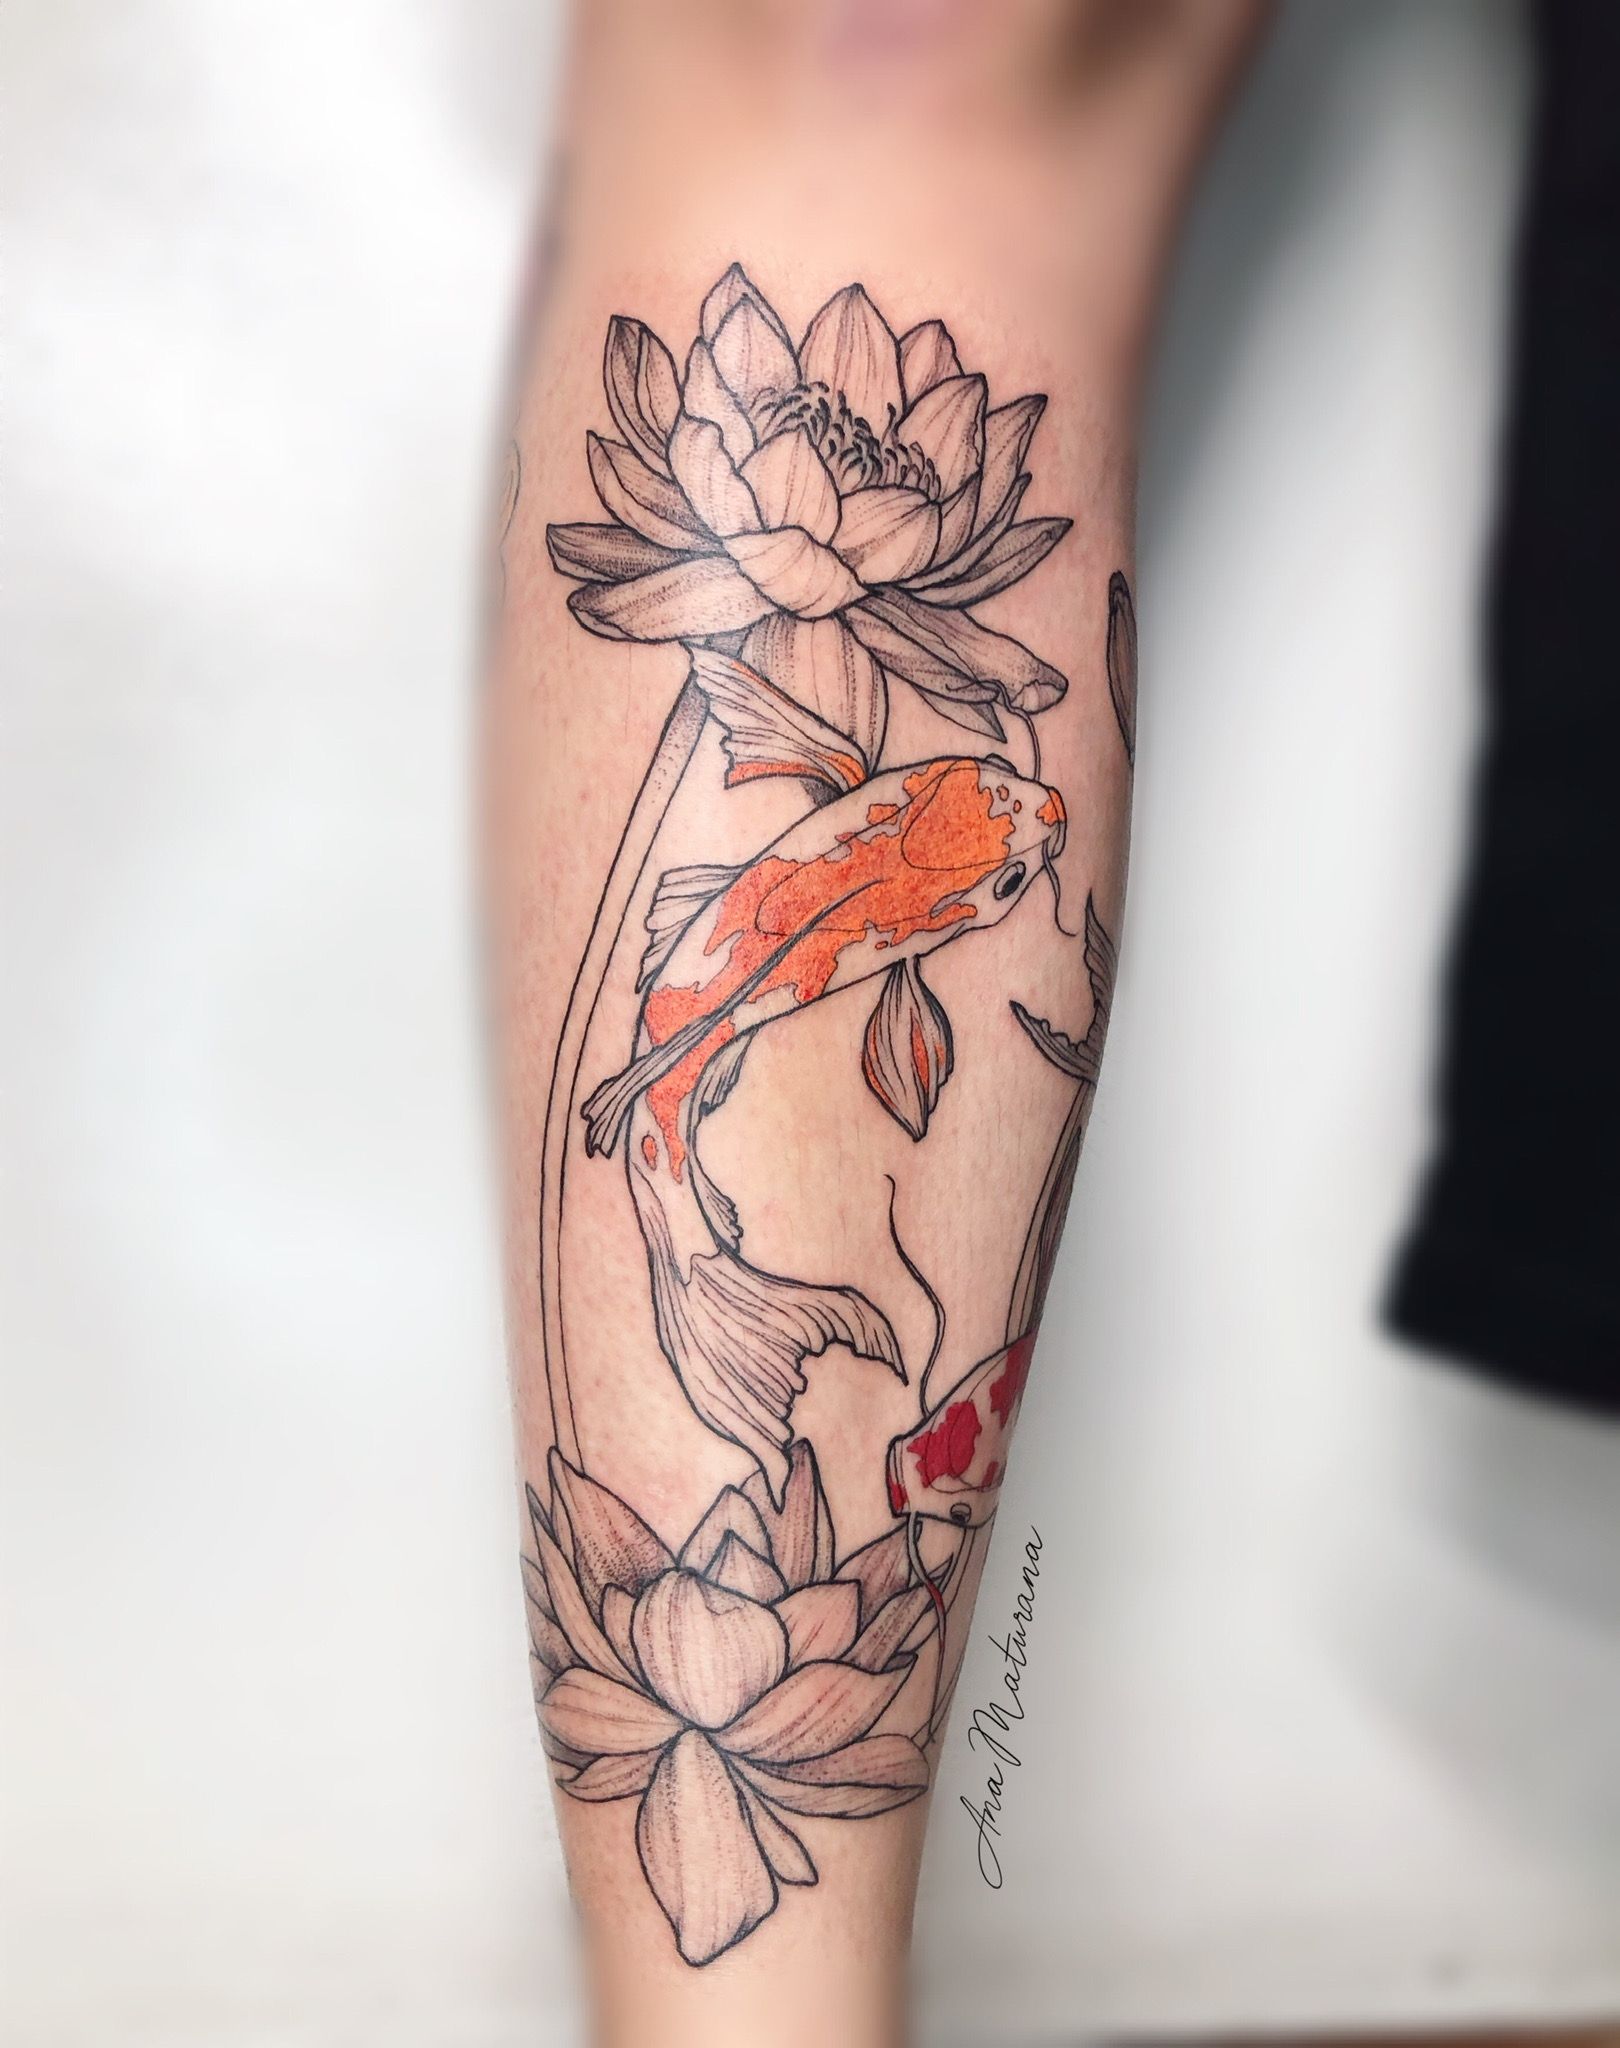 Tattoo uploaded by Ana Maturana • Koi Fish with lotus flower I 🎏 • Tattoodo